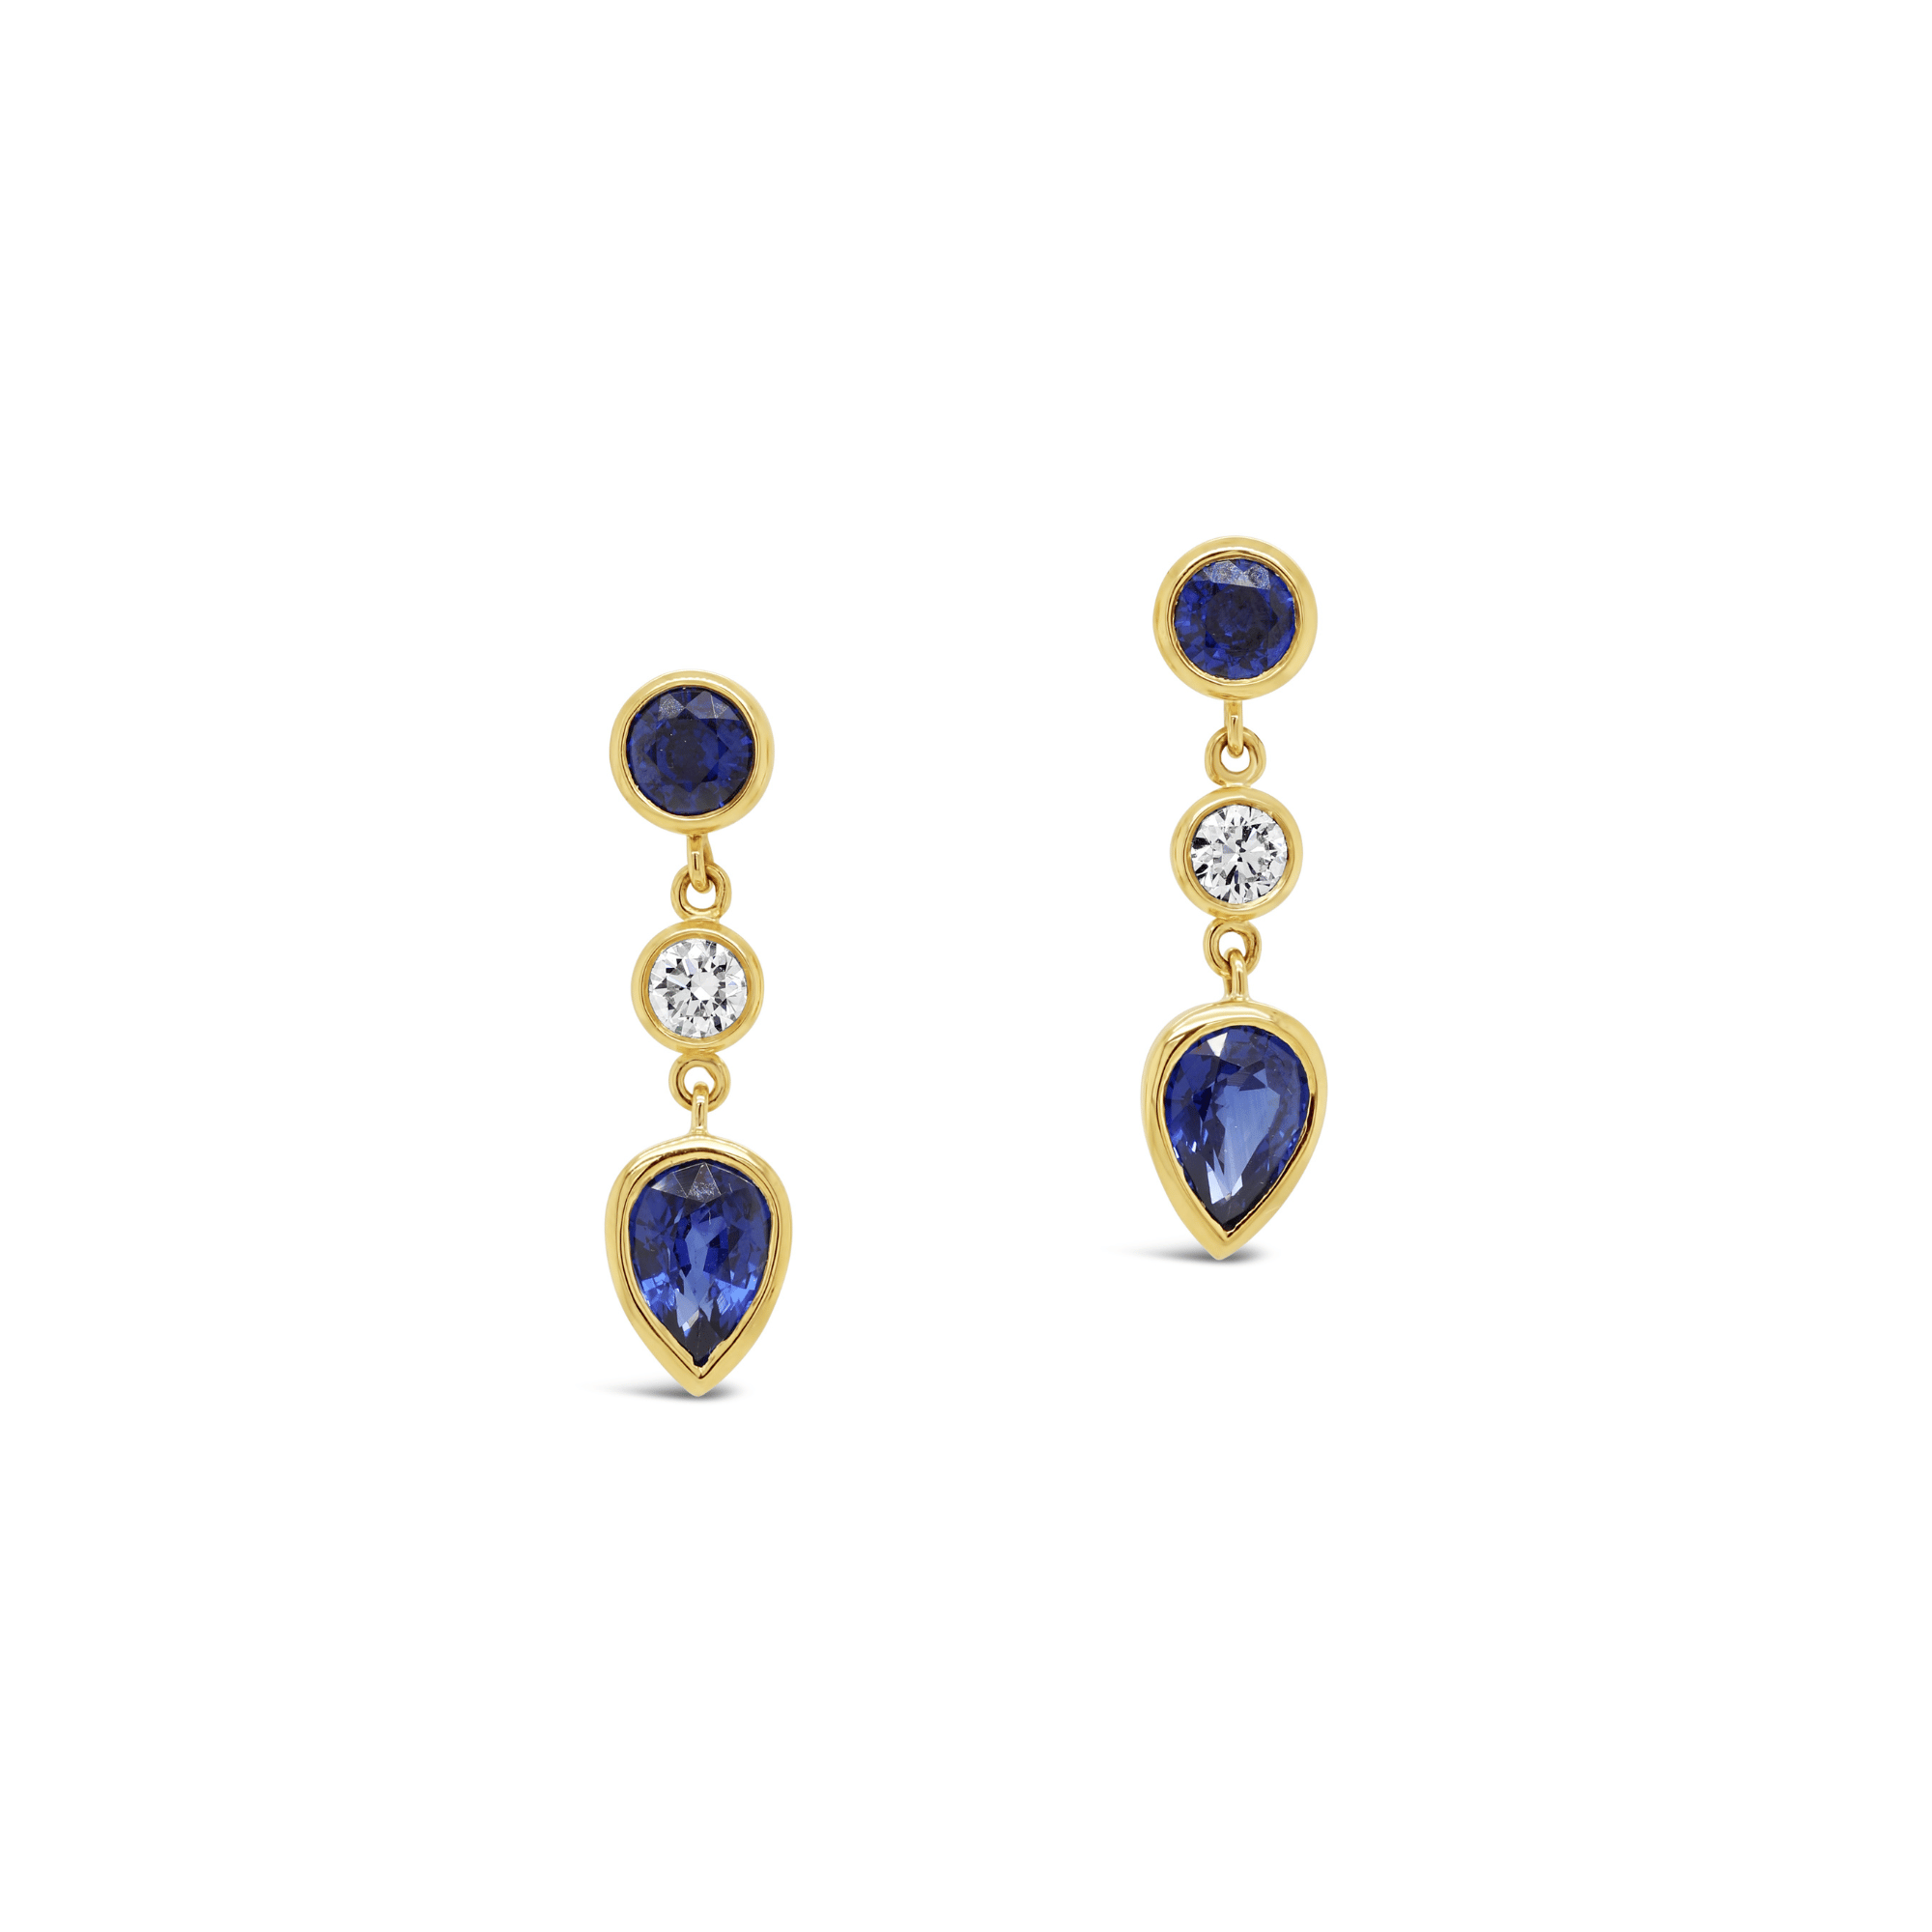 Blue sapphire & diamond bezel set earrings in yellow gold